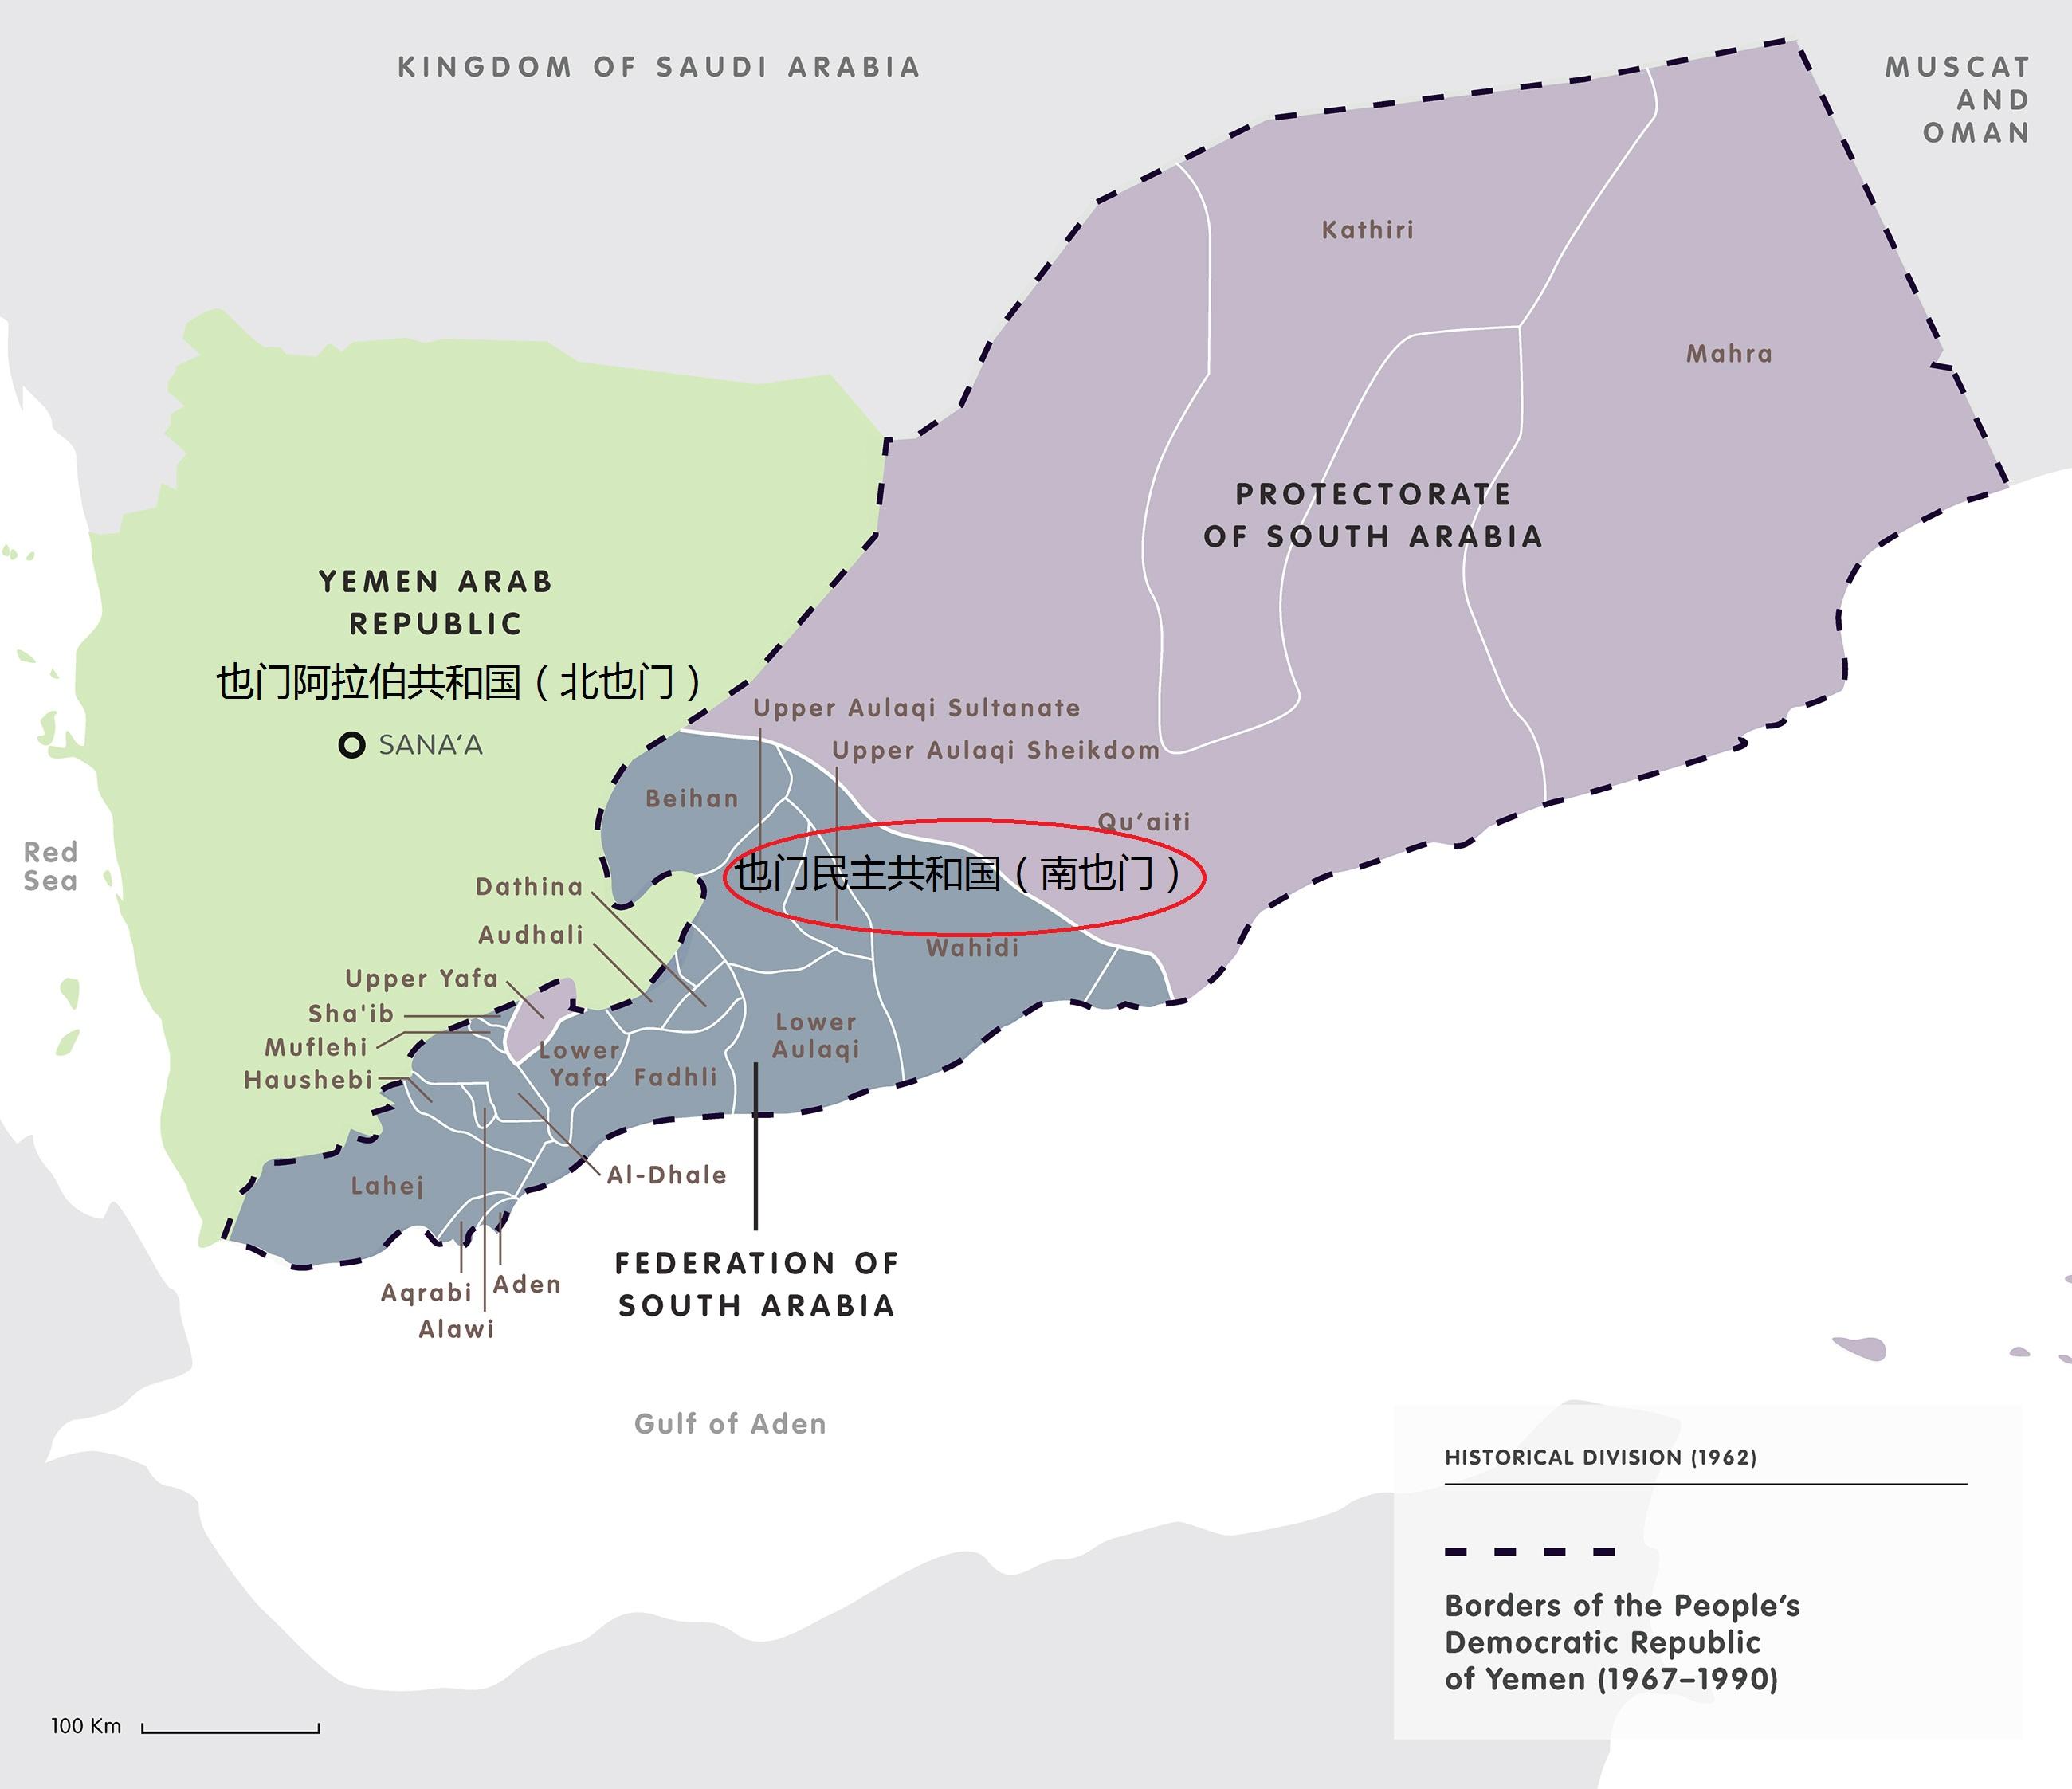 原属也门民主人民共和国(南也门)的南部省份,长期处于政治经济地位被